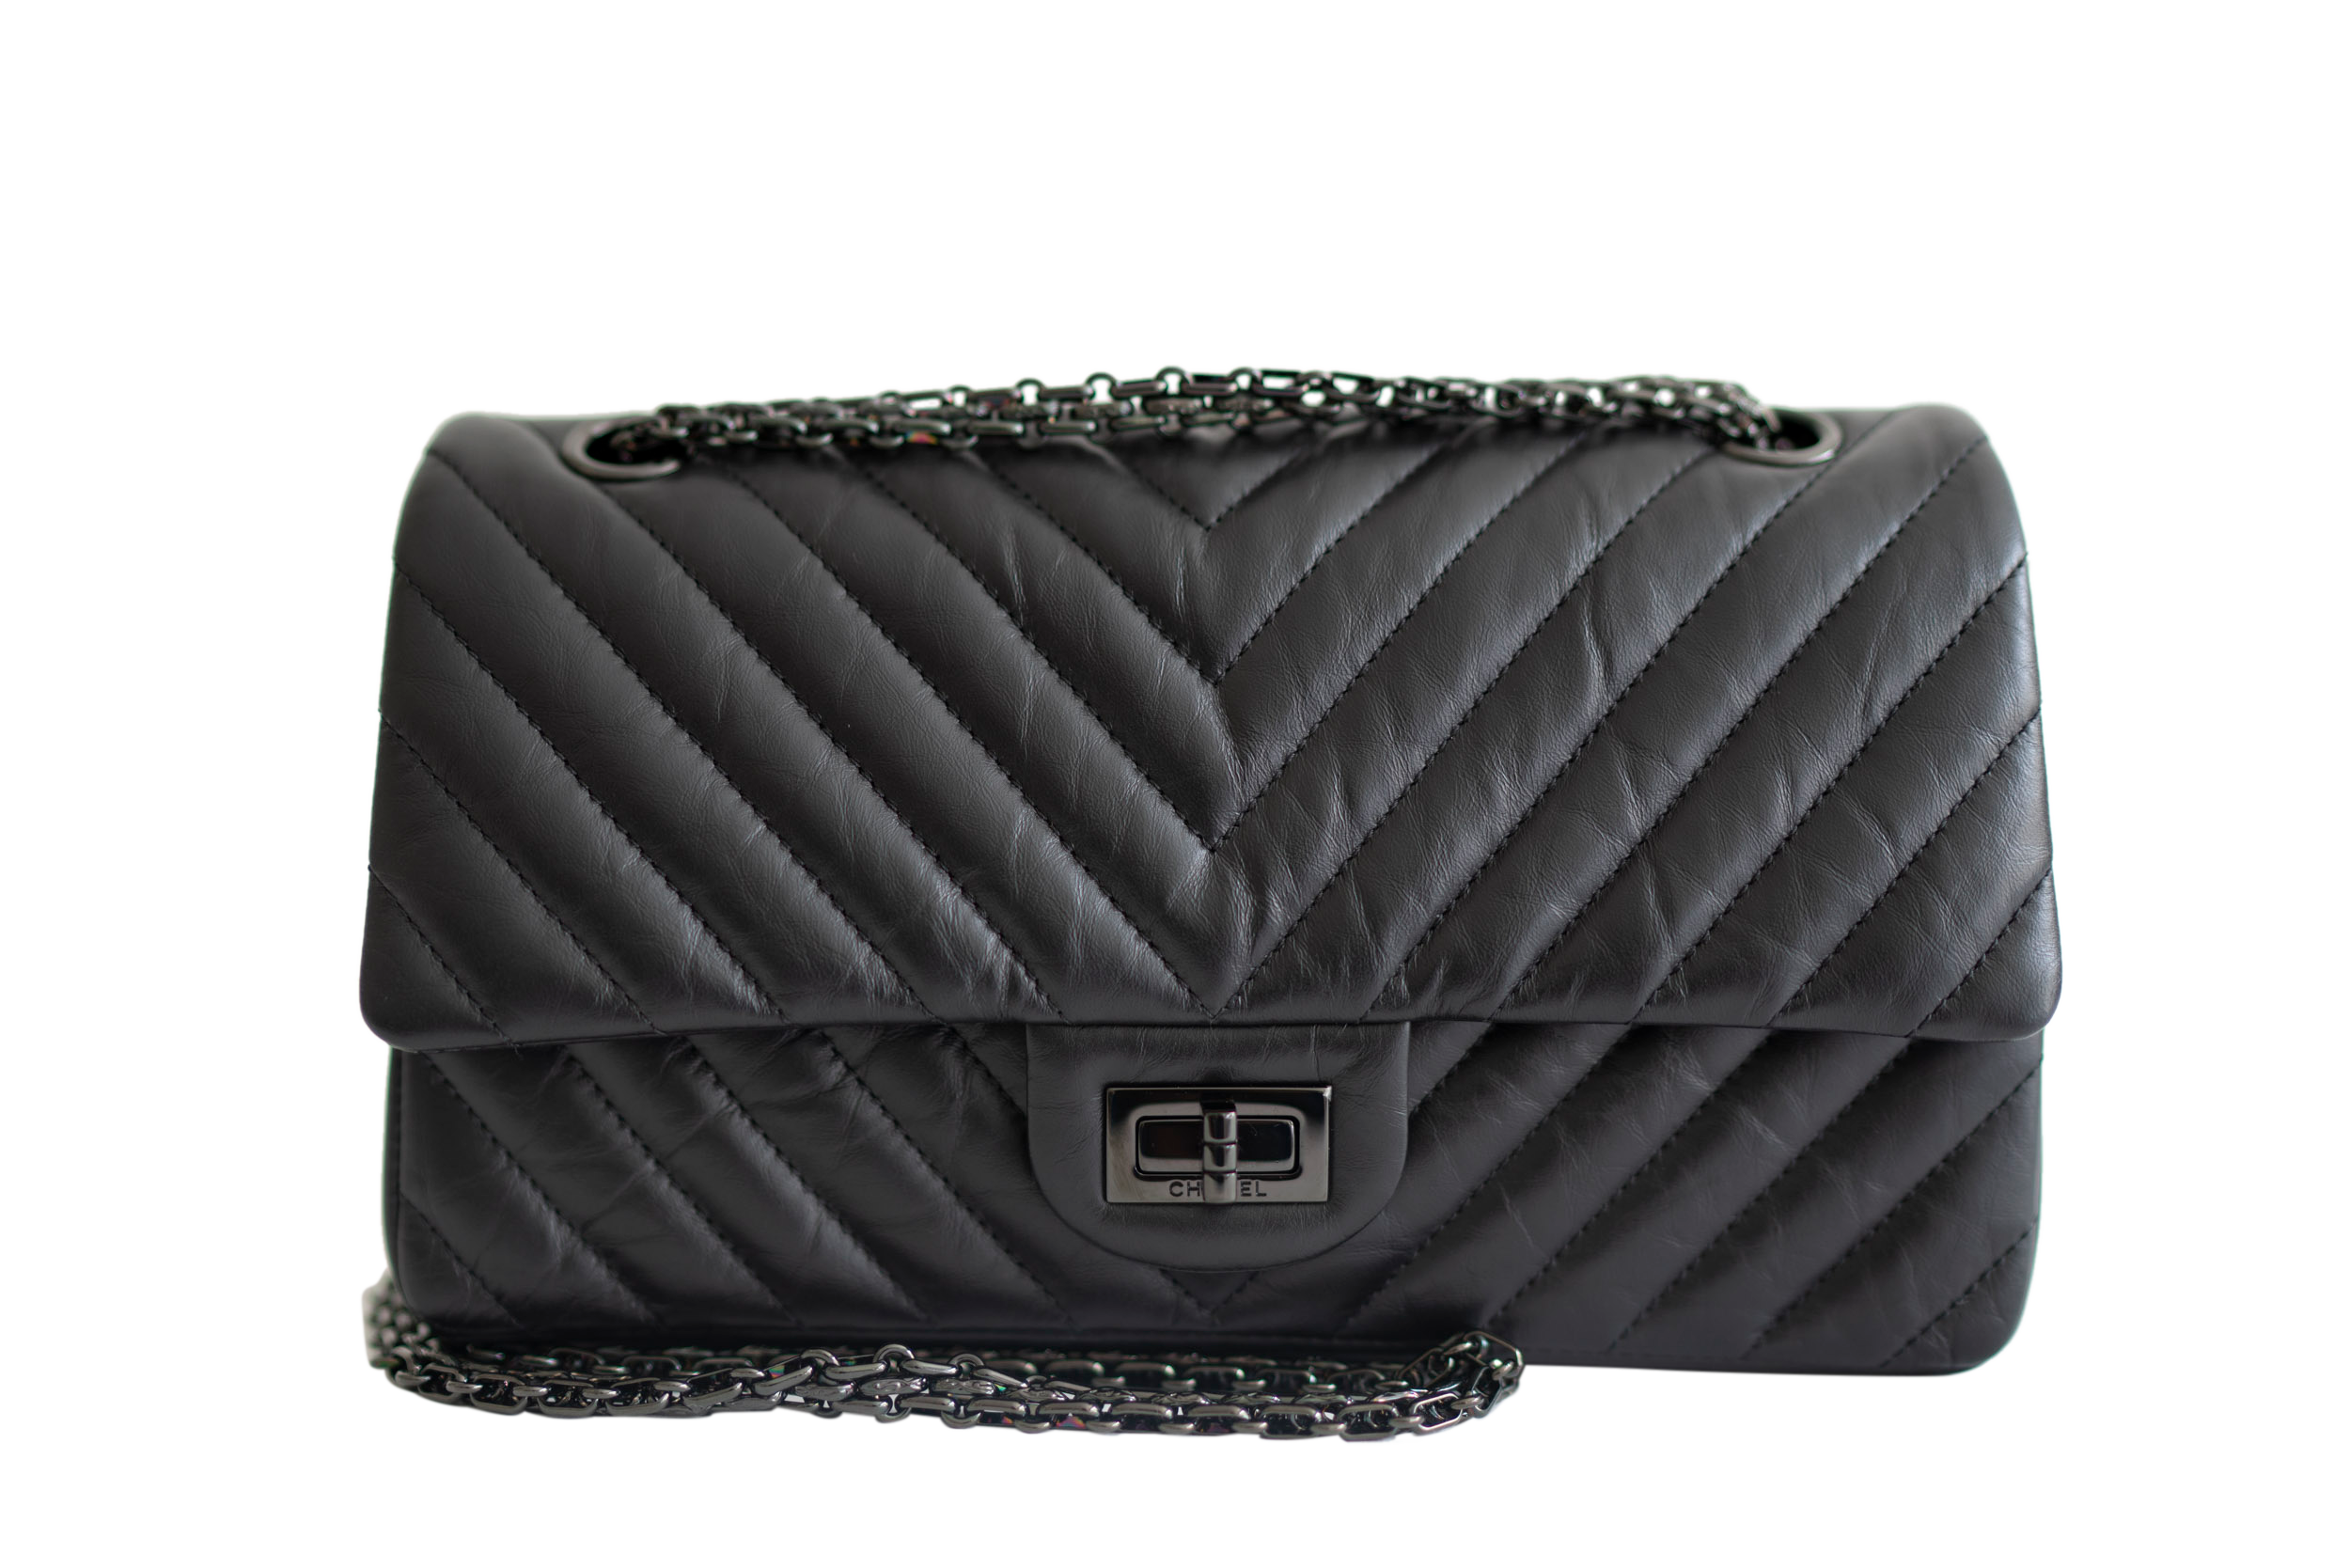 Vanity Chanel Vanity en osier et cuir noir  Owned 1990 Medium Chevron  Double Flap Shoulder Bag  Chanel Pre  WakeorthoShops